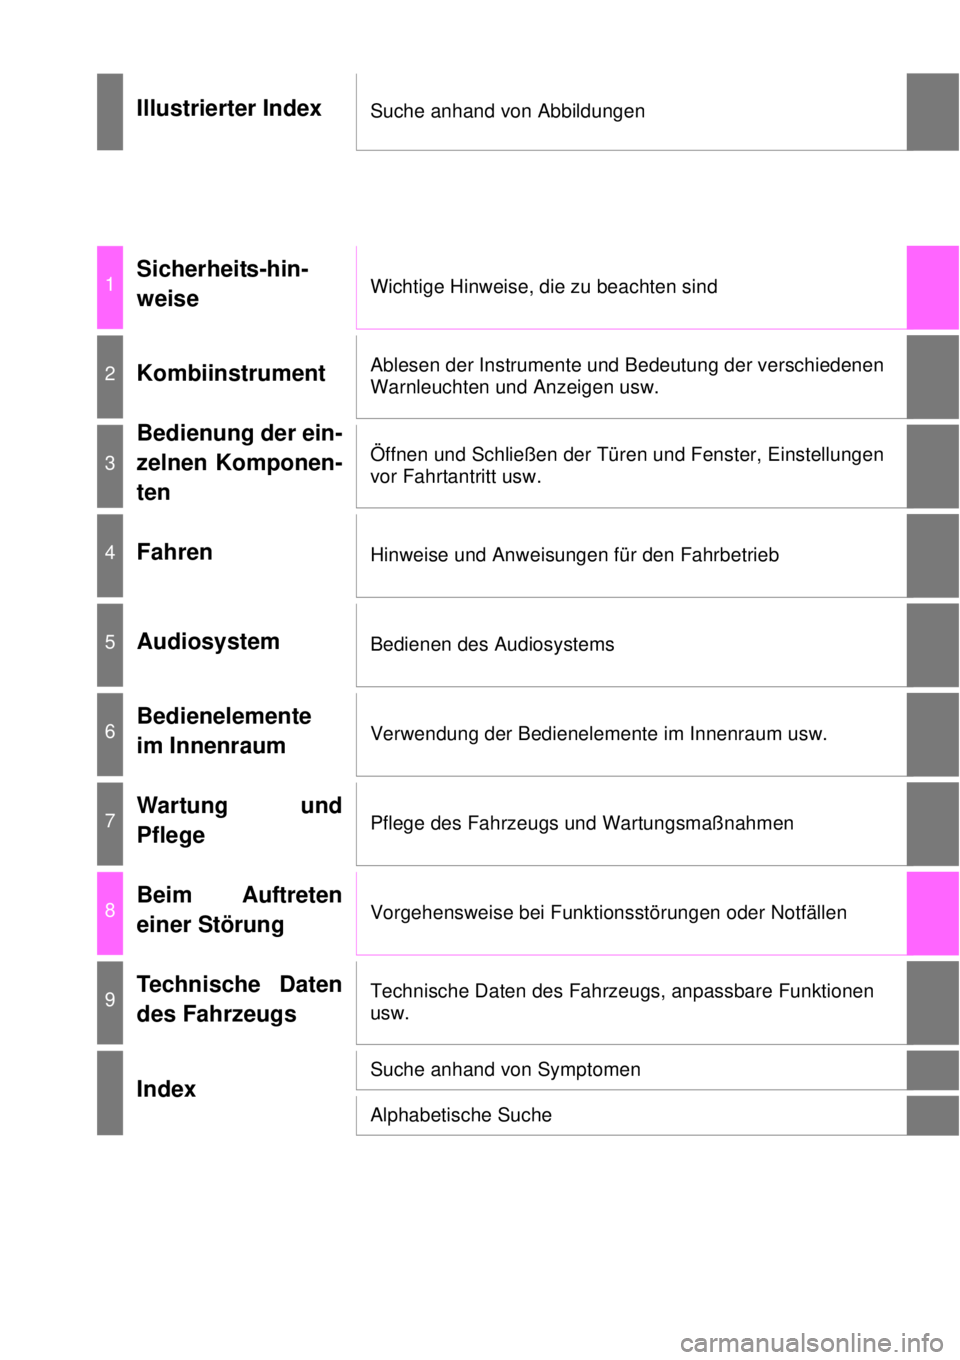 TOYOTA YARIS 2015  Betriebsanleitungen (in German) Illustrierter IndexSuche anhand von Abbildungen
1Sicherheits-hin-
weiseWichtige Hinweise, die zu beachten sind
2KombiinstrumentAblesen der Instrumente und Bedeutung der verschiedenen 
Warnleuchten und